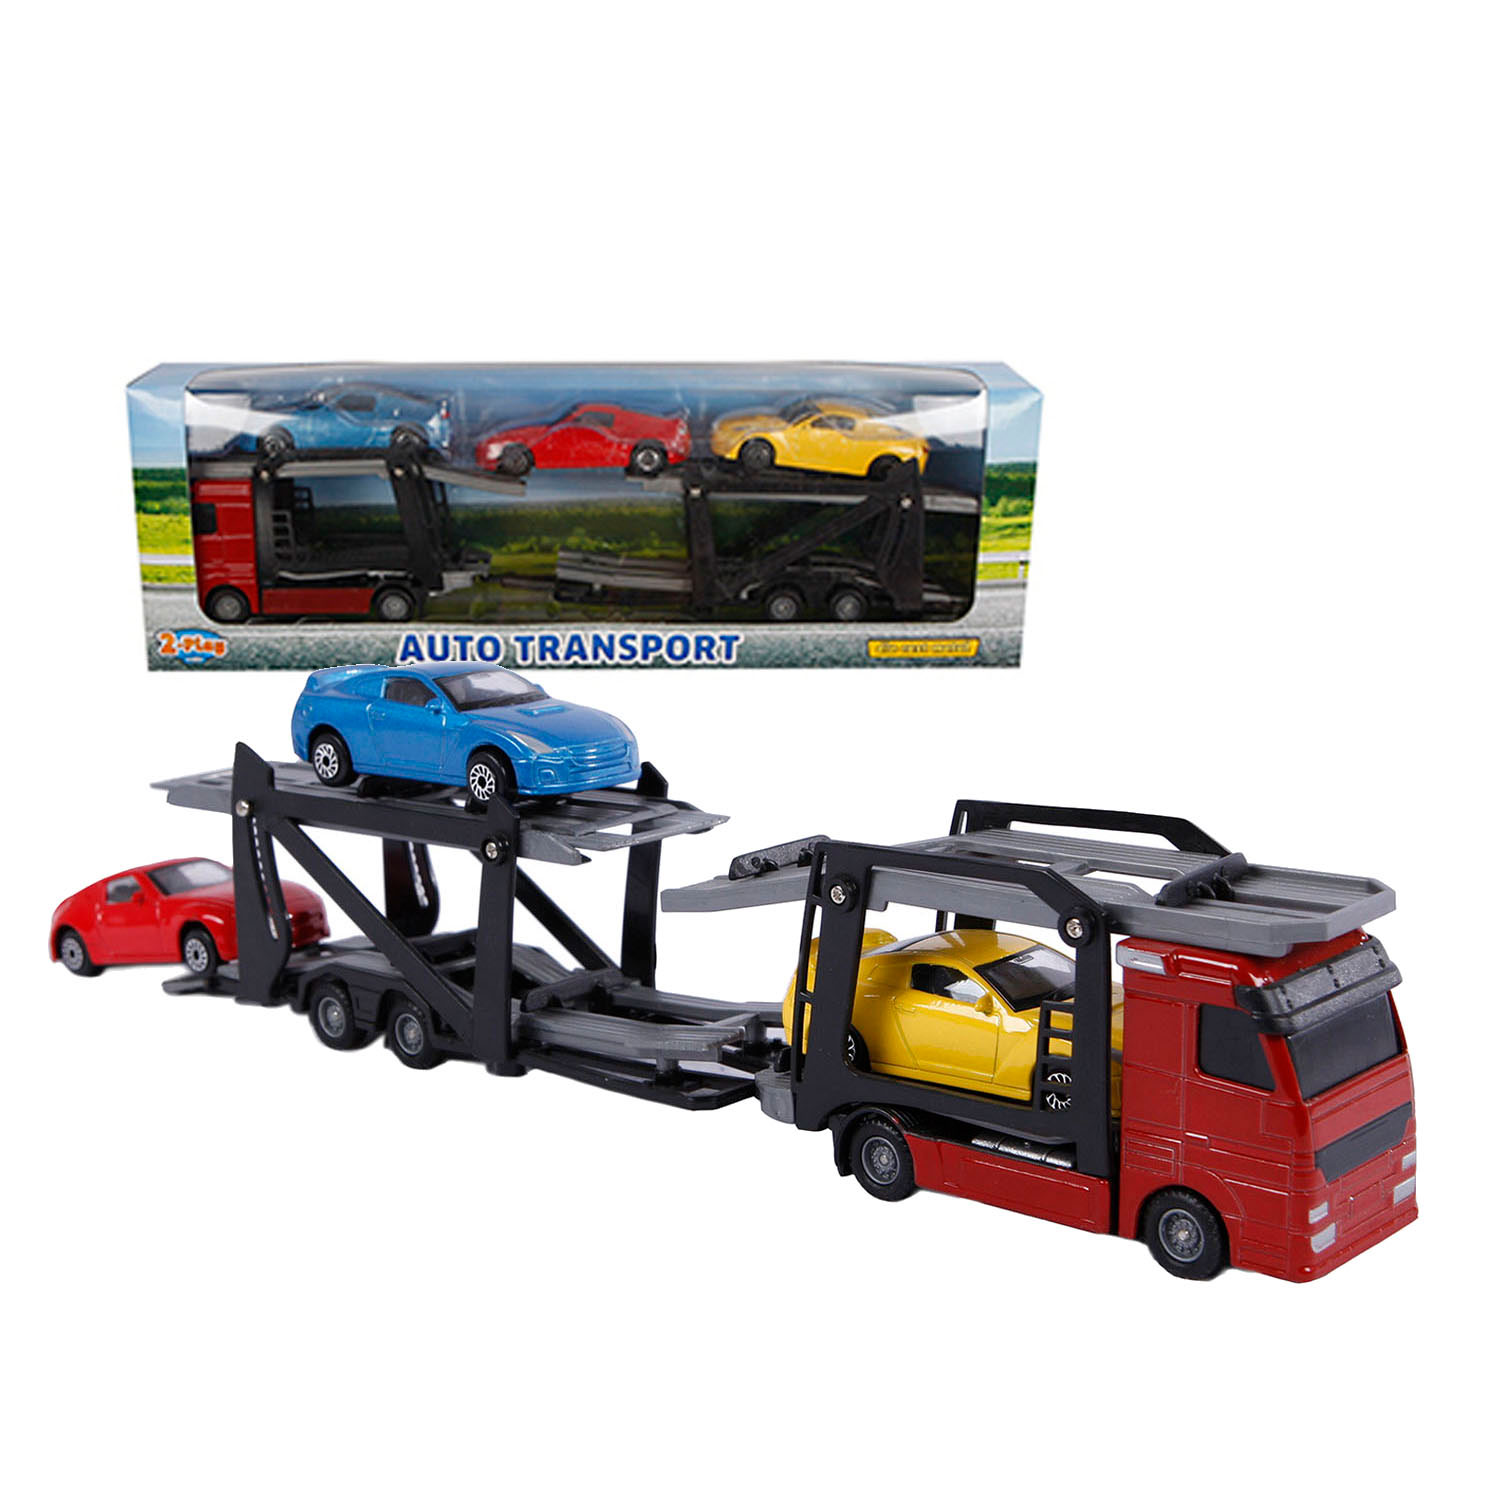 2- Play Transporteur de camion moulé sous pression avec voitures, 26 cm